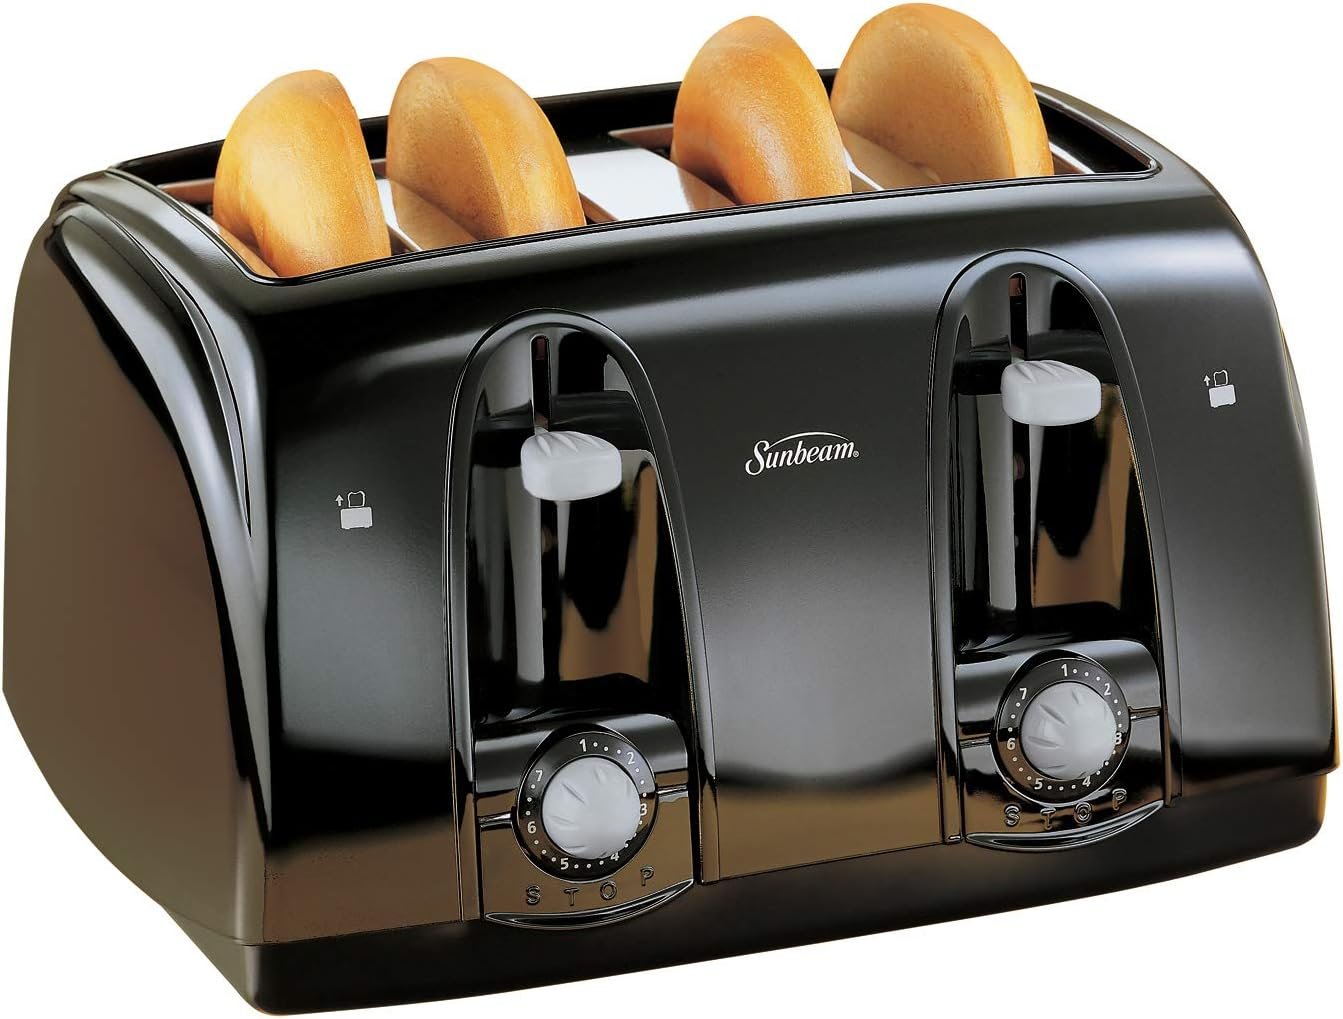 Sunbeam Wide Slot 4-Slice Toaster, Black (003911-100-000)